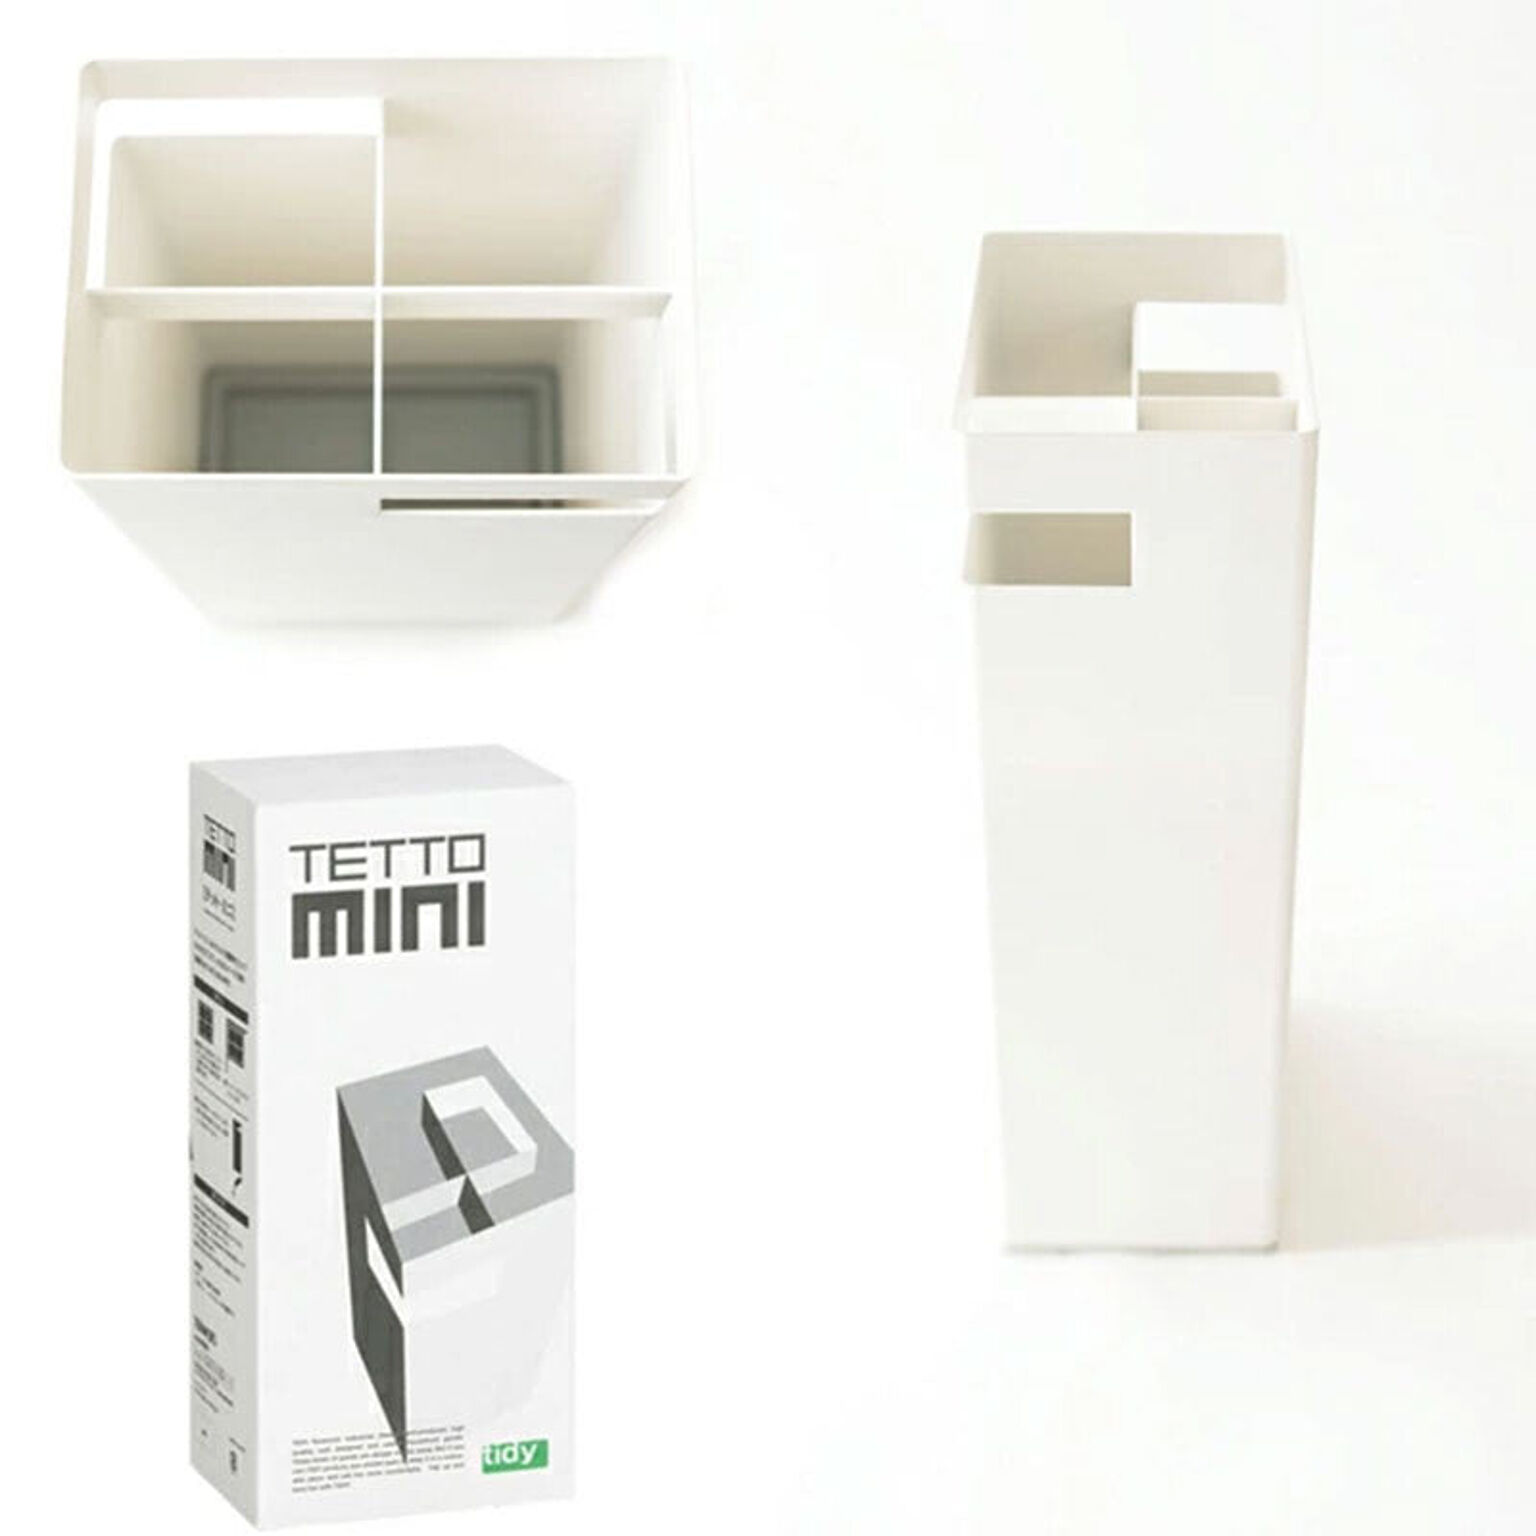 tidy/ティディ】 TETTO mini テット ミニ(傘立て） 通販 家具とインテリアの通販【RoomClipショッピング】